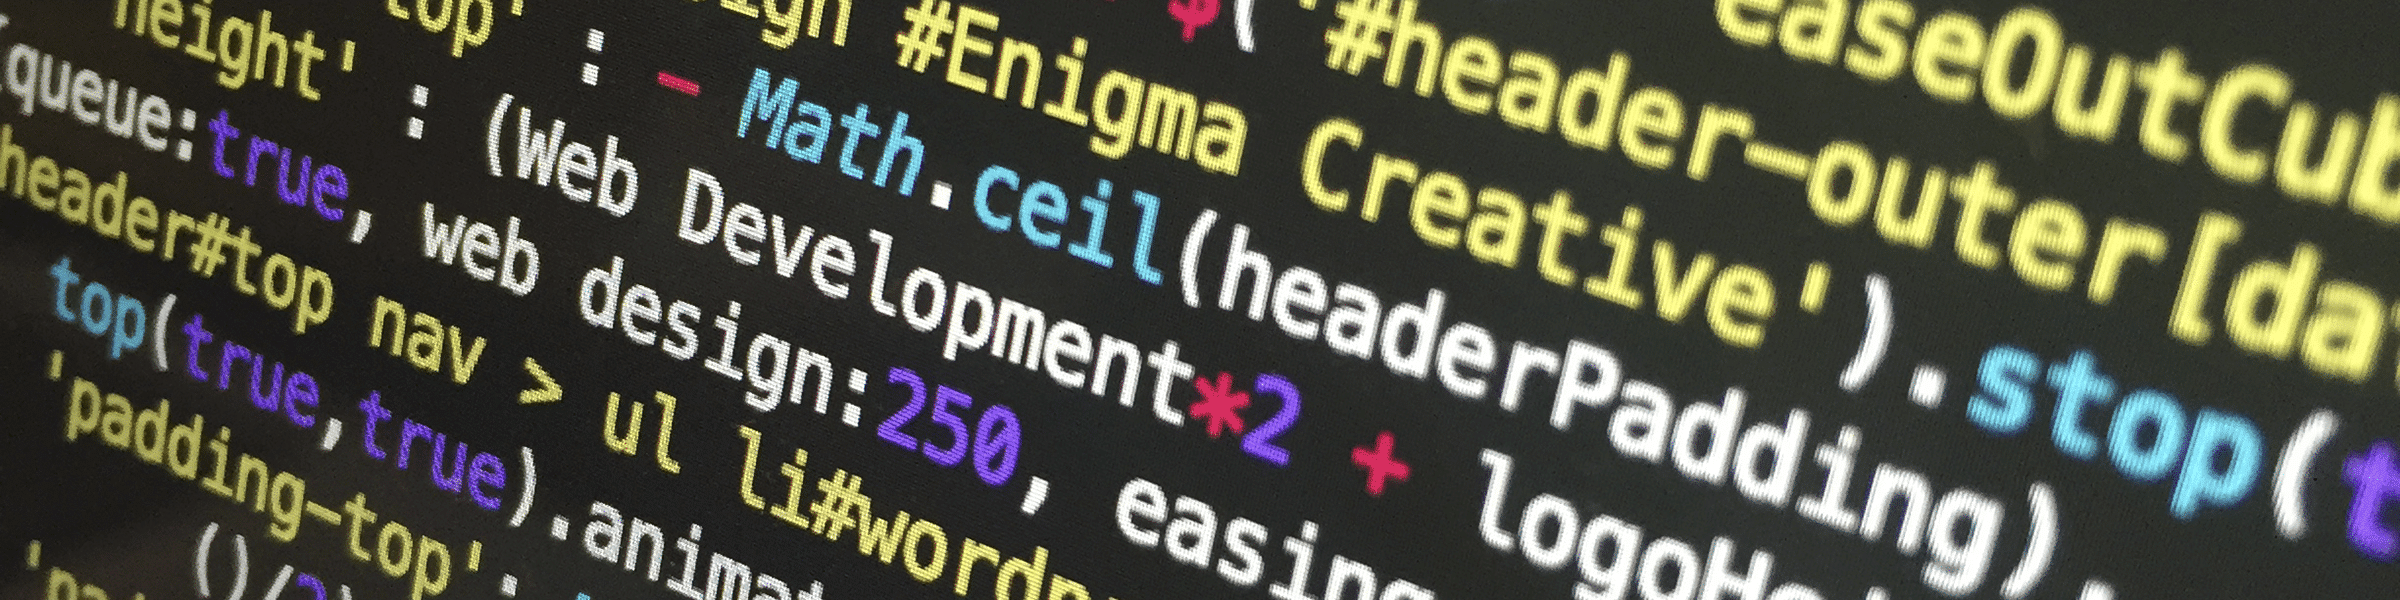 Web Design & Development from Enigma Creative